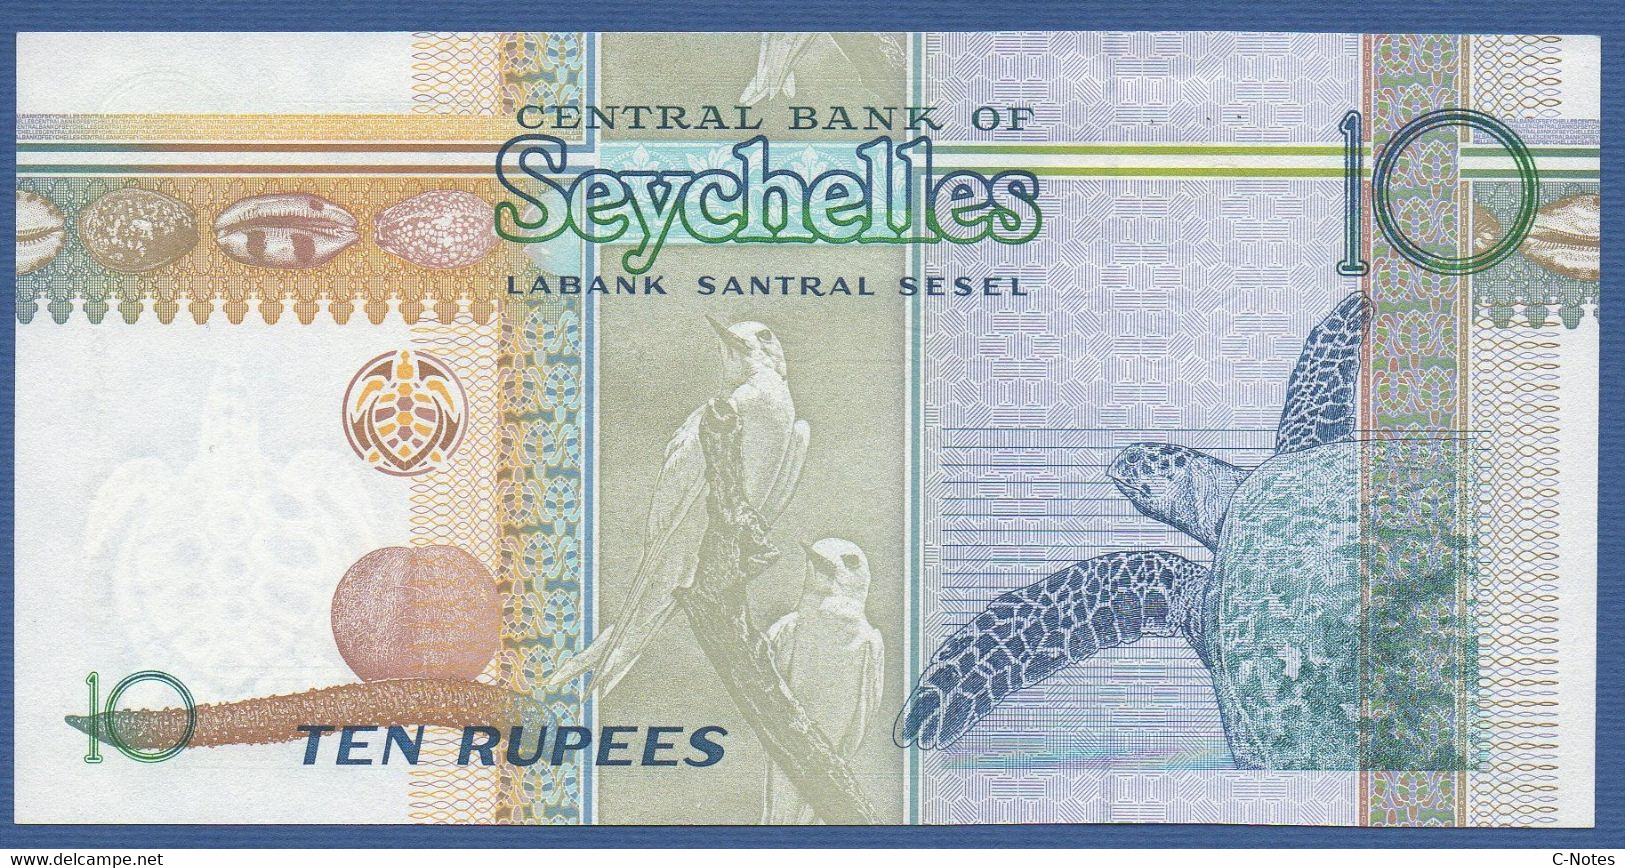 SEYCHELLES - P.36a – 10 RUPEES ND (1998) UNC Serie AC541529 - Seychellen